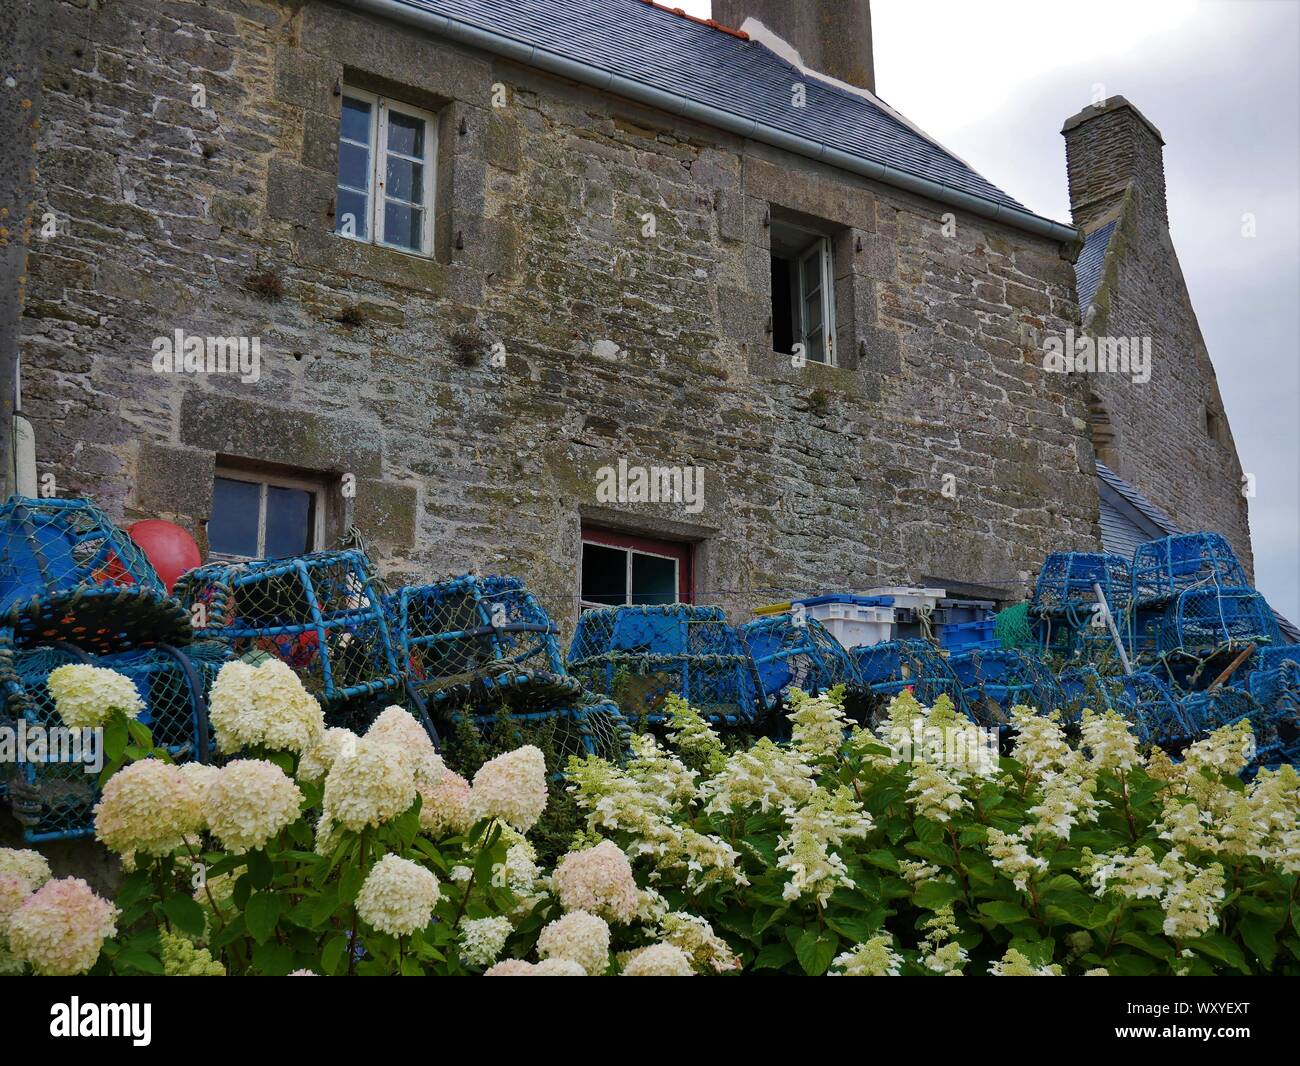 Maison bretonne fleurie d'hortensias avec des accessoires de peche au crustacés , toit en ardoise , casier de peche , le conquet , bretagne Stock Photo